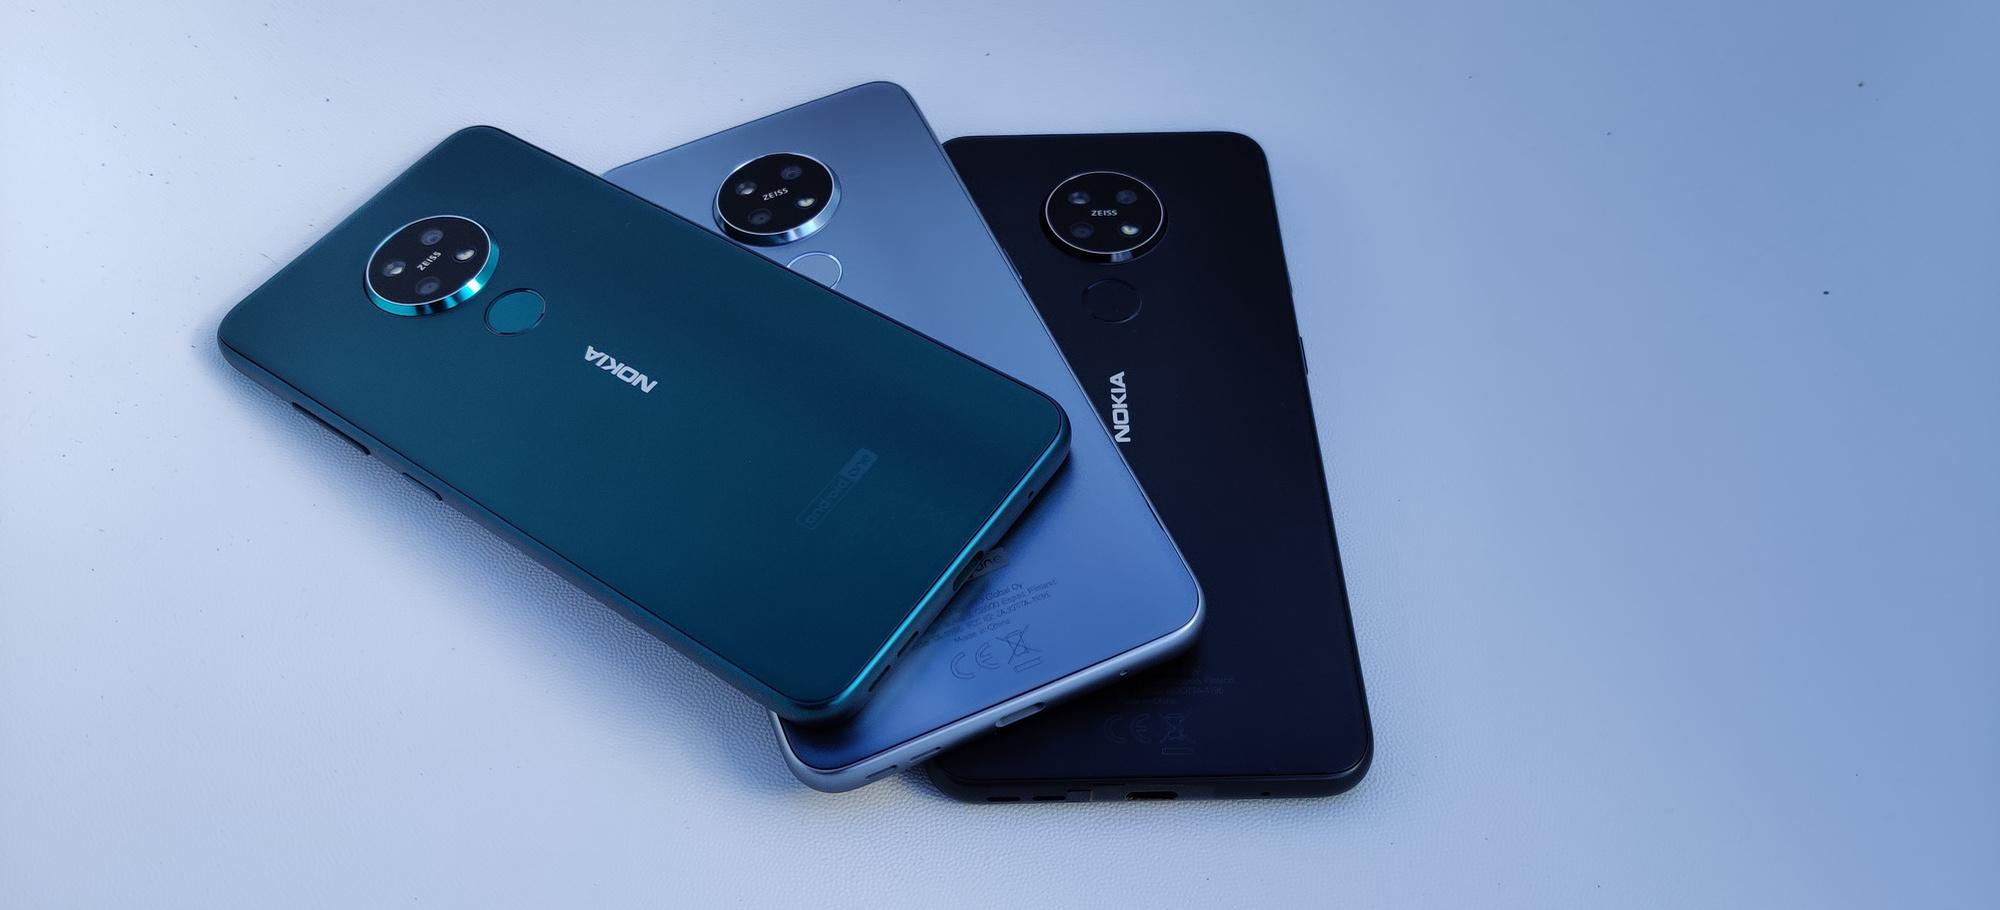 De Nokia 7.2 is een midrange smartphone. De iets goedkopere 6.2 ziet er identiek uit, op het Zeiss-logo na.